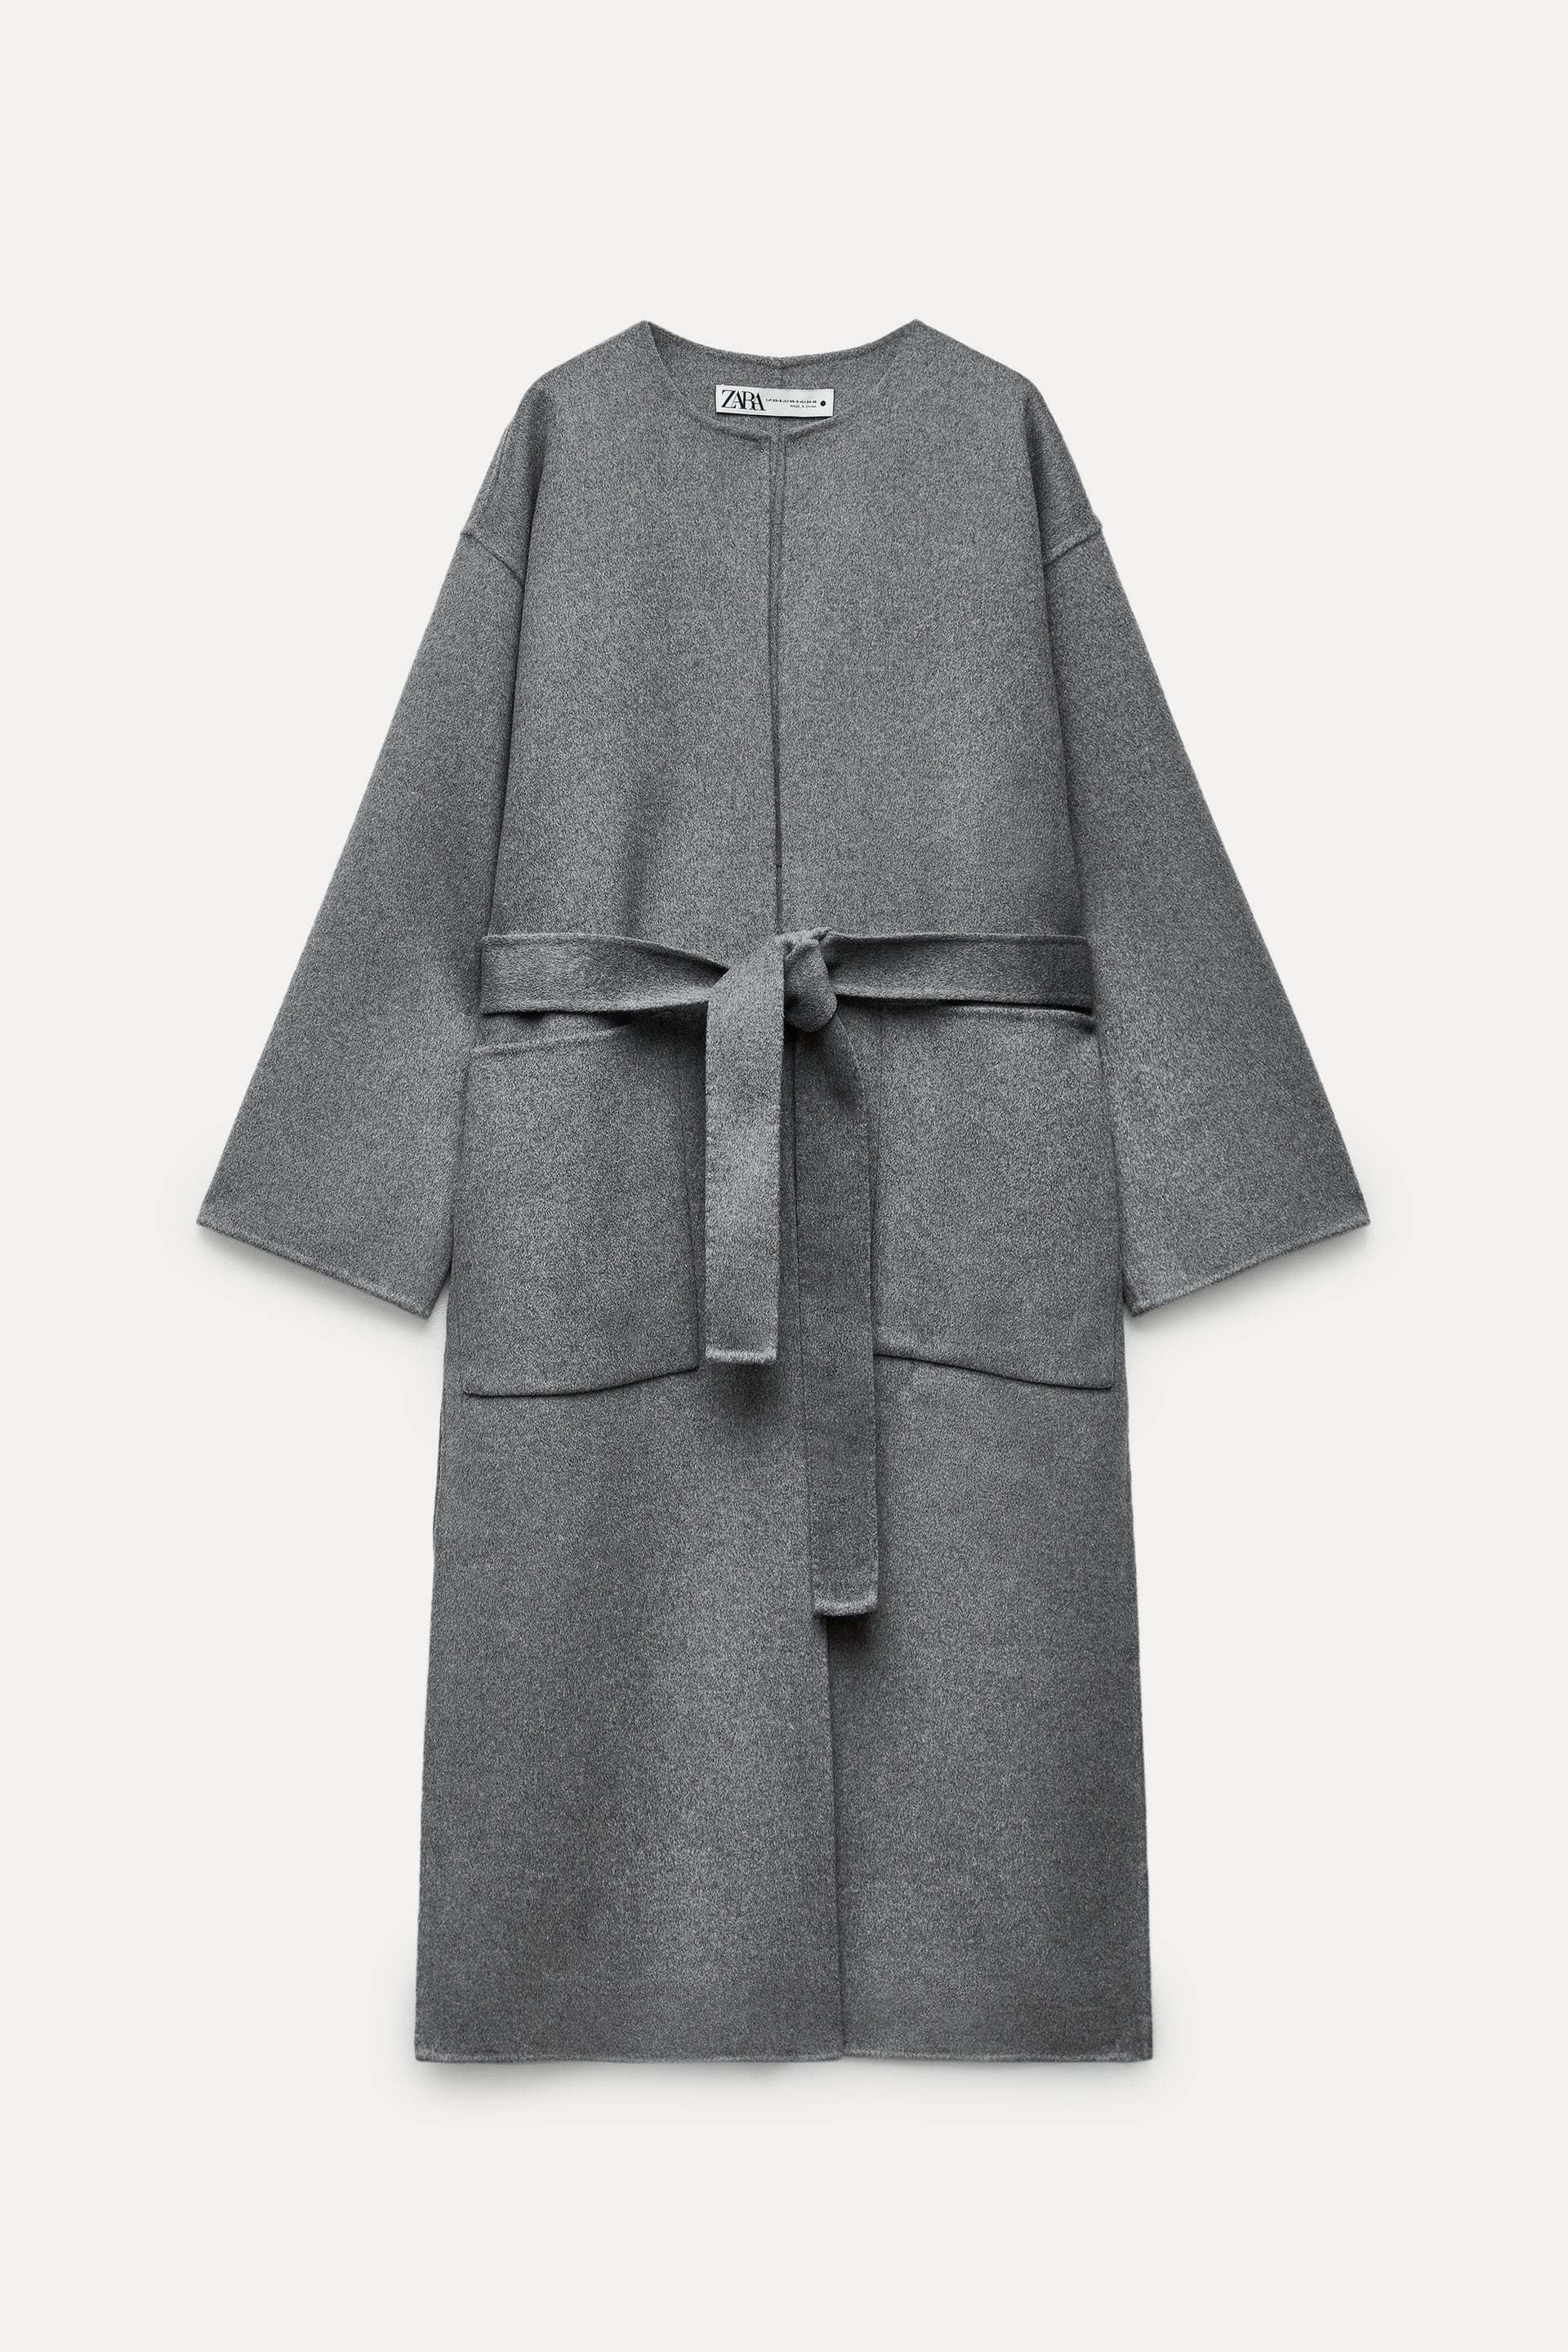 Abrigo gris con lana y aberturas laterales de Zara (169 euros).